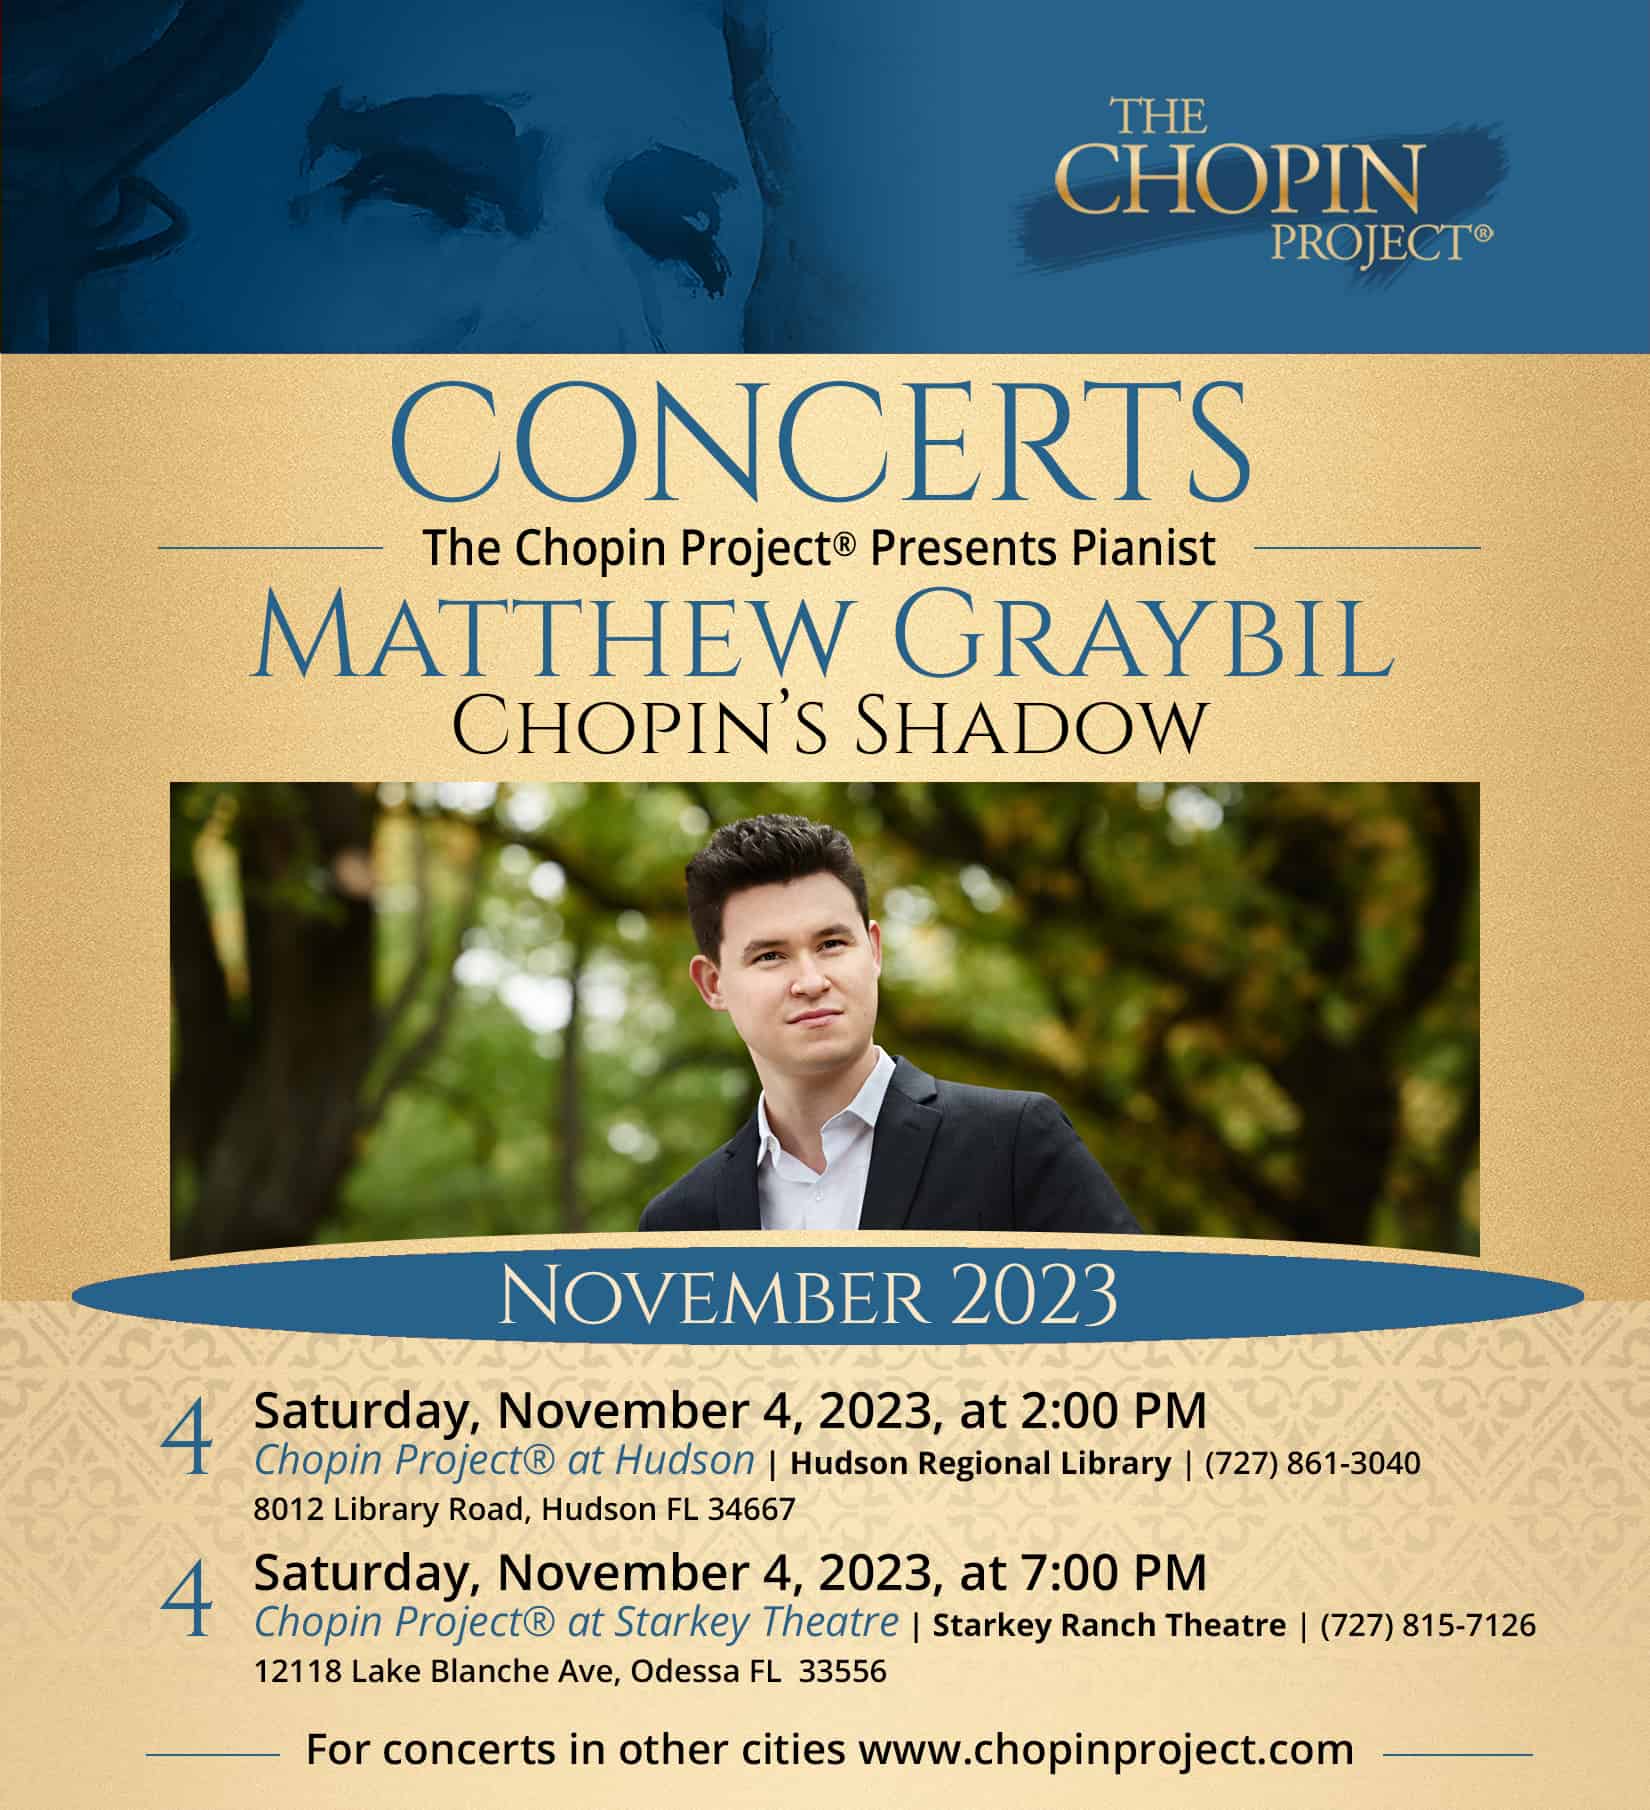 Chopin Project Concert flyer for Matthew Graybil